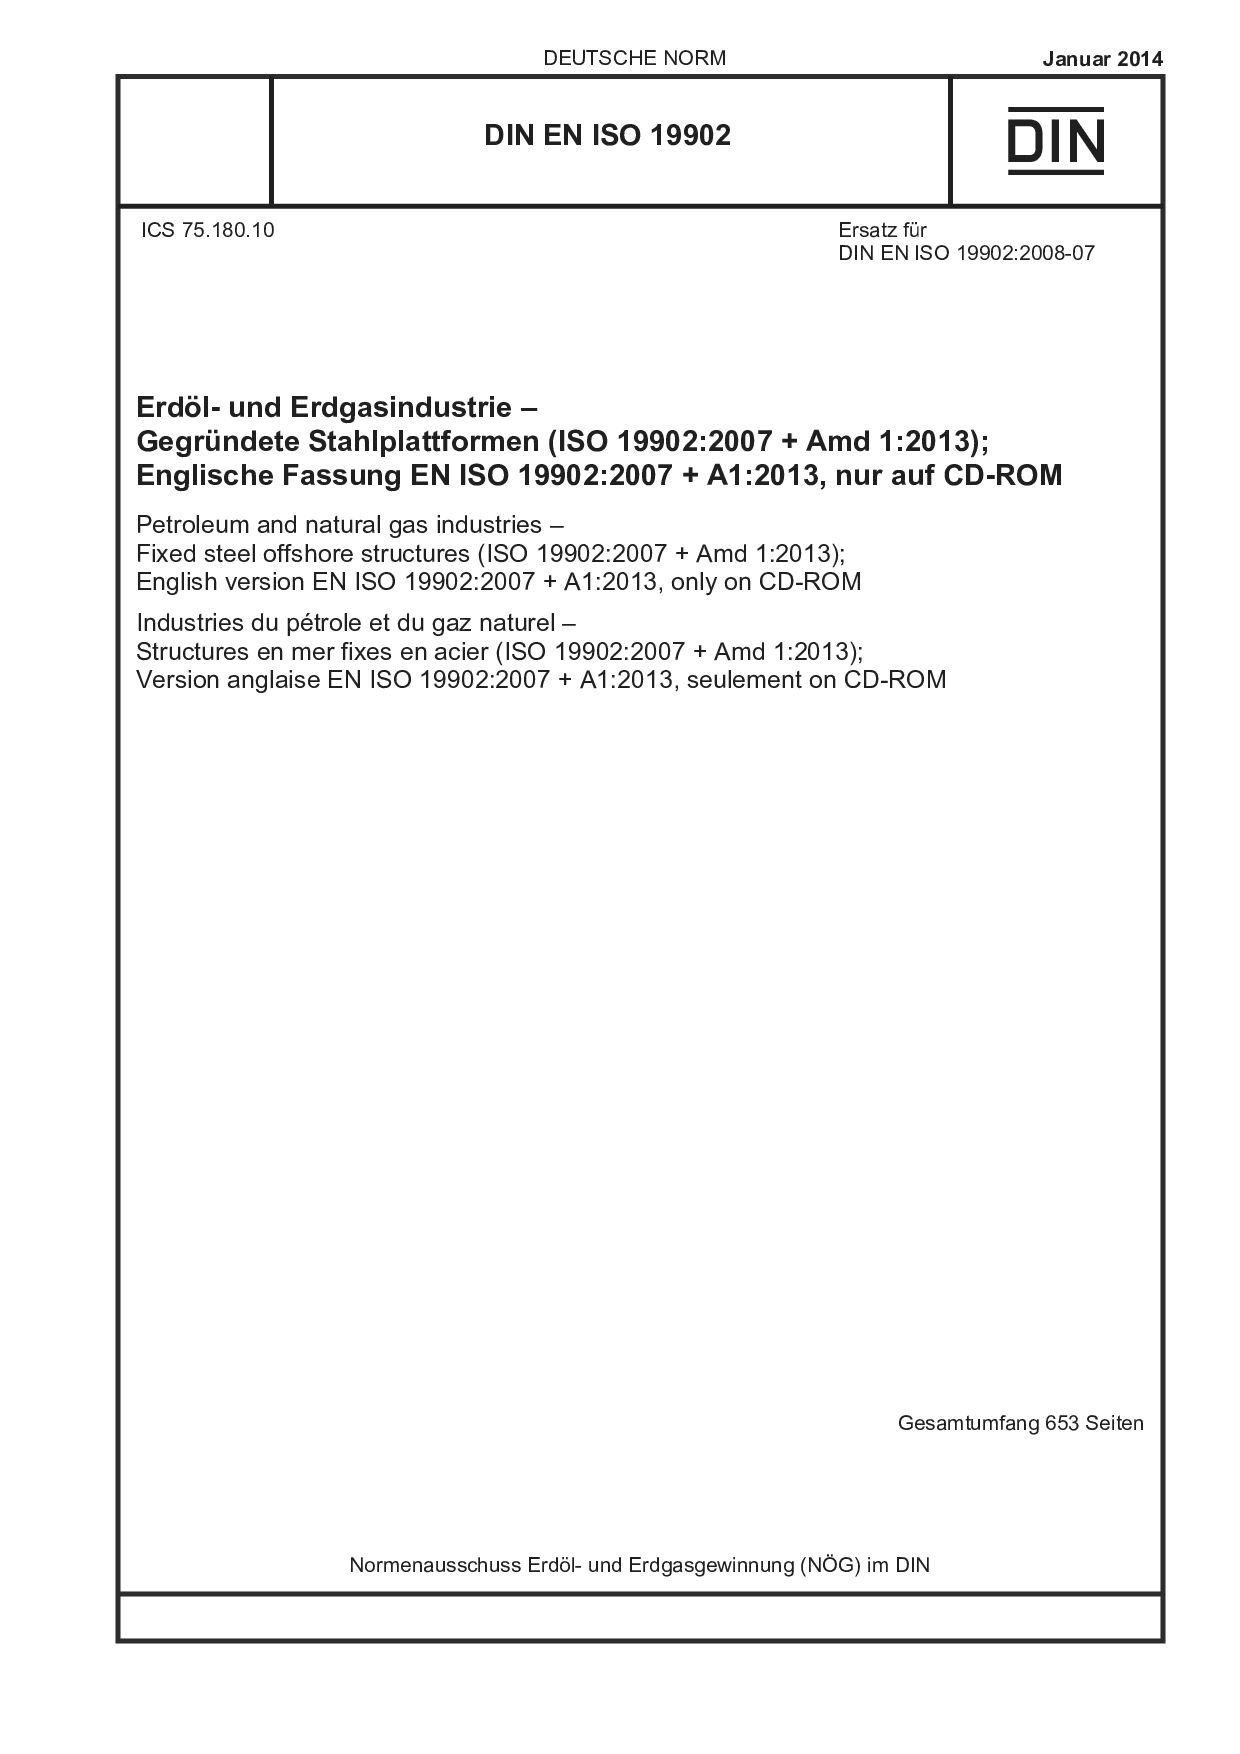 DIN EN ISO 19902:2014封面图